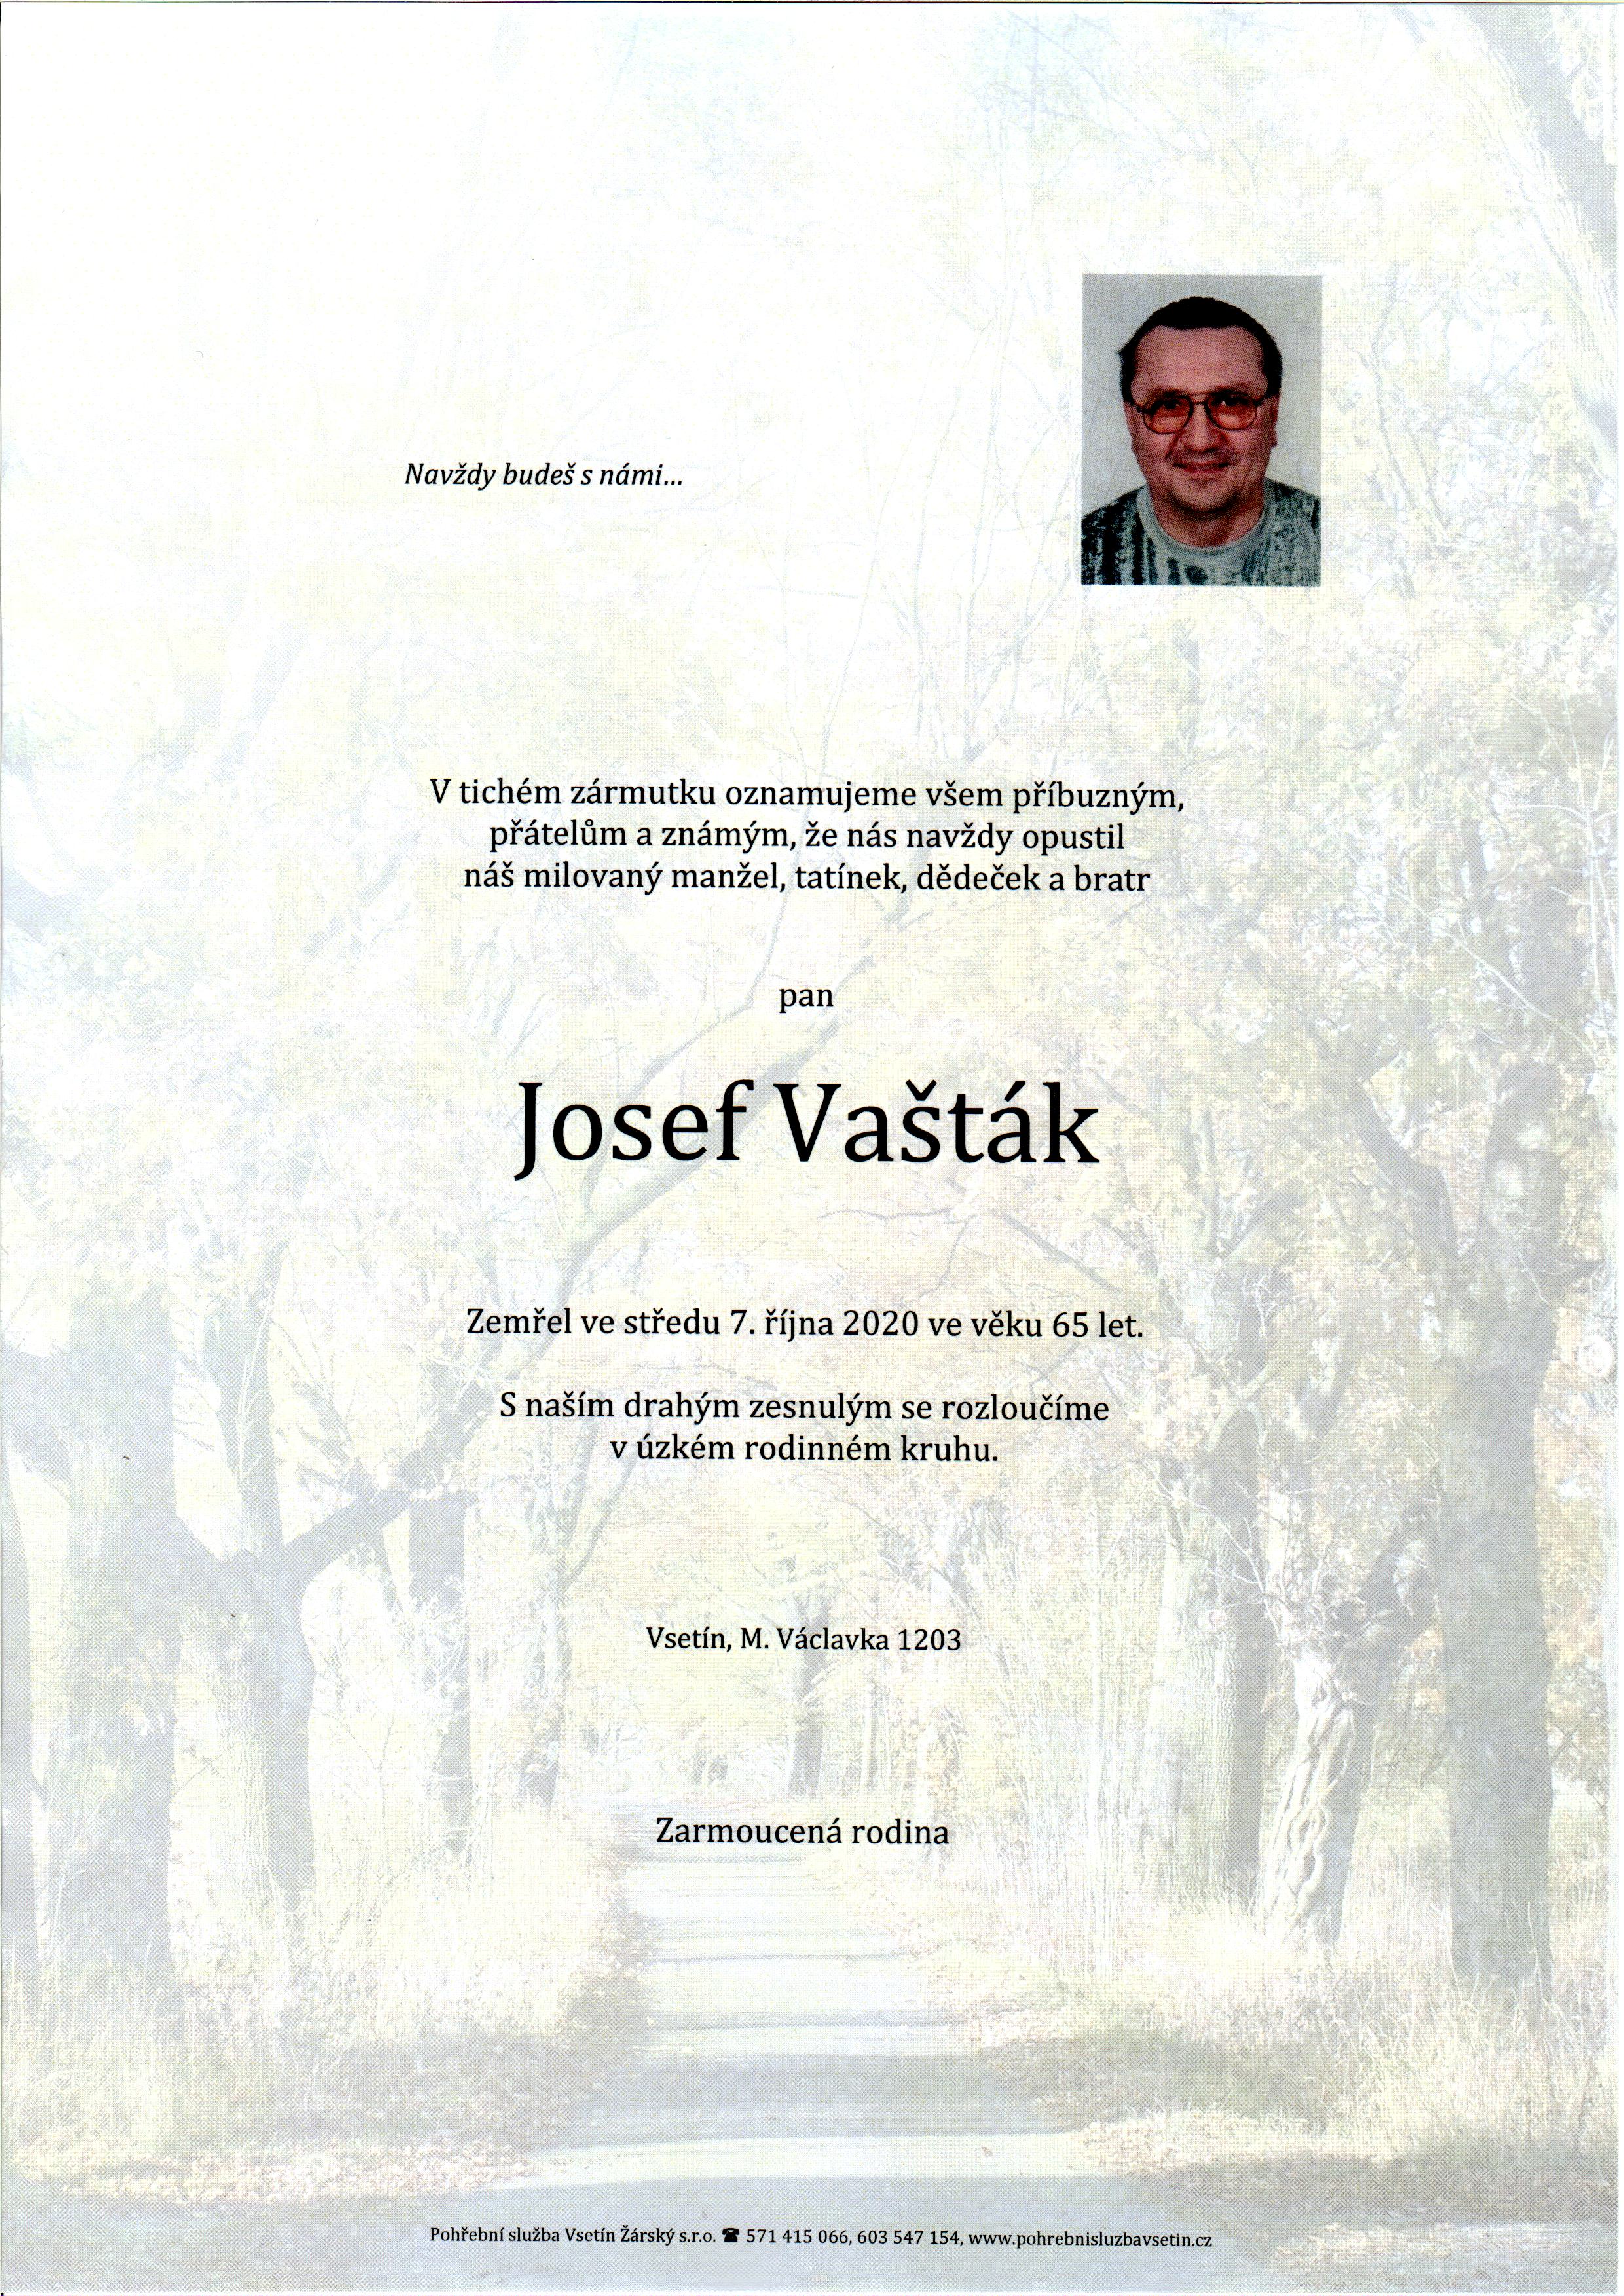 Josef Vašták